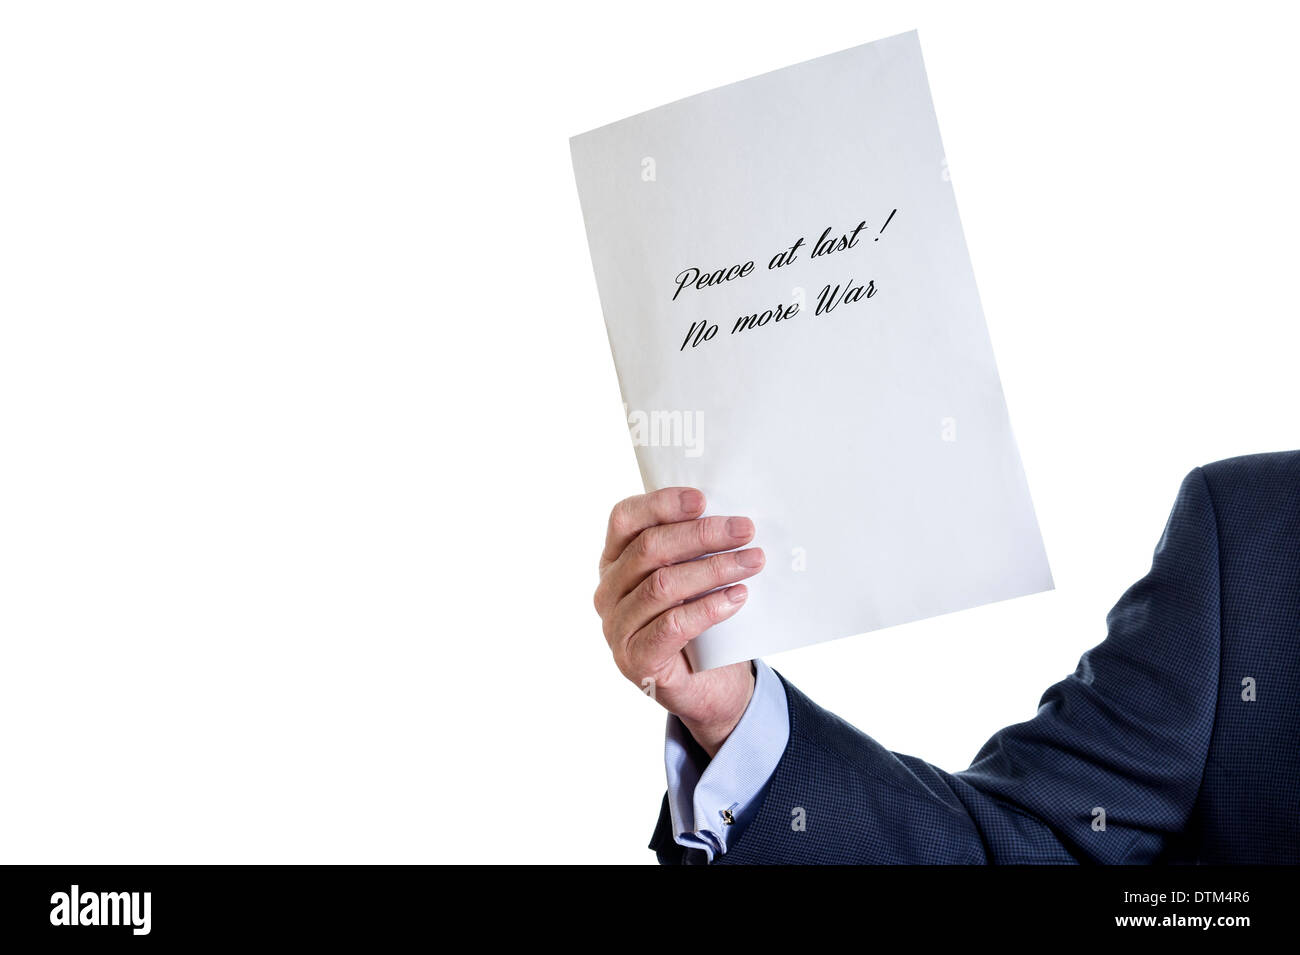 Hombre sujetando una hoja de papel en blanco. "Por fin la paz! No más guerra" presupuesto. Foto de stock